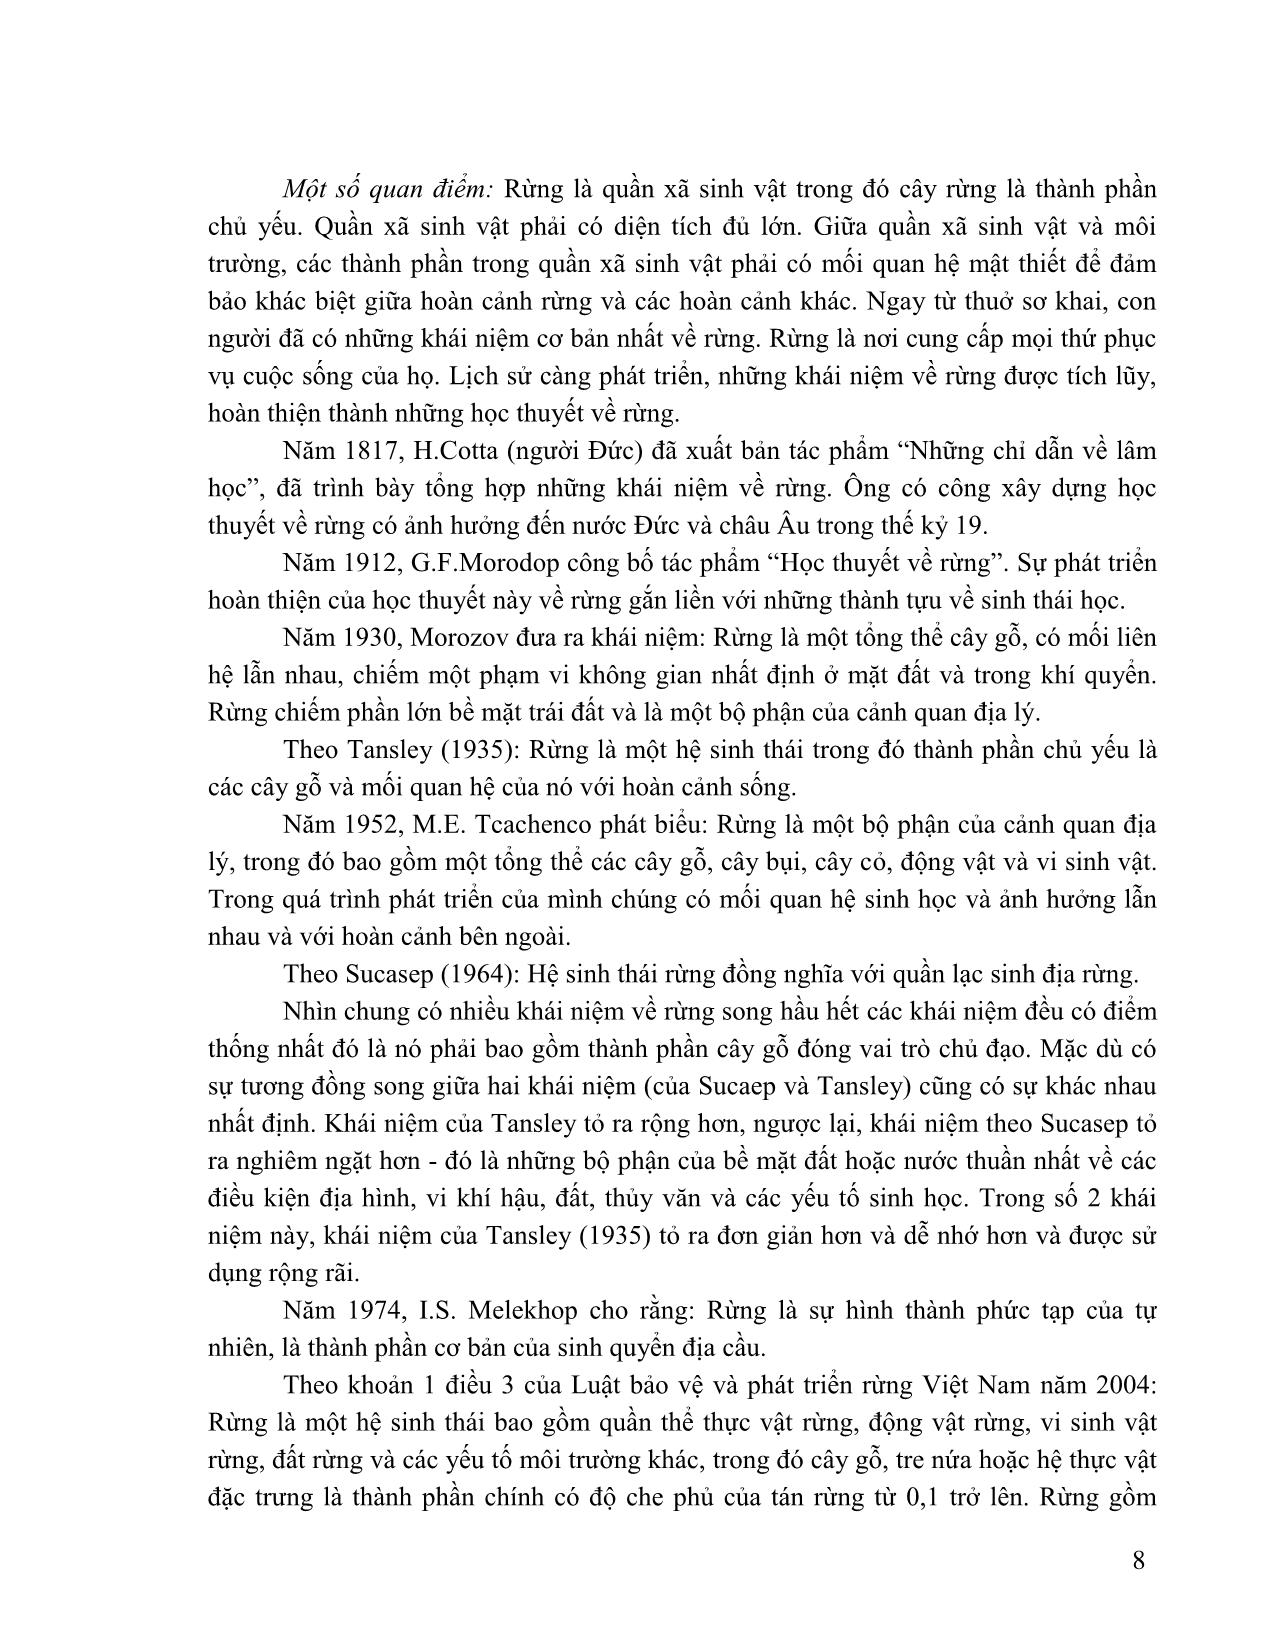 Giáo trình Lâm sinh tổng hợp trang 9